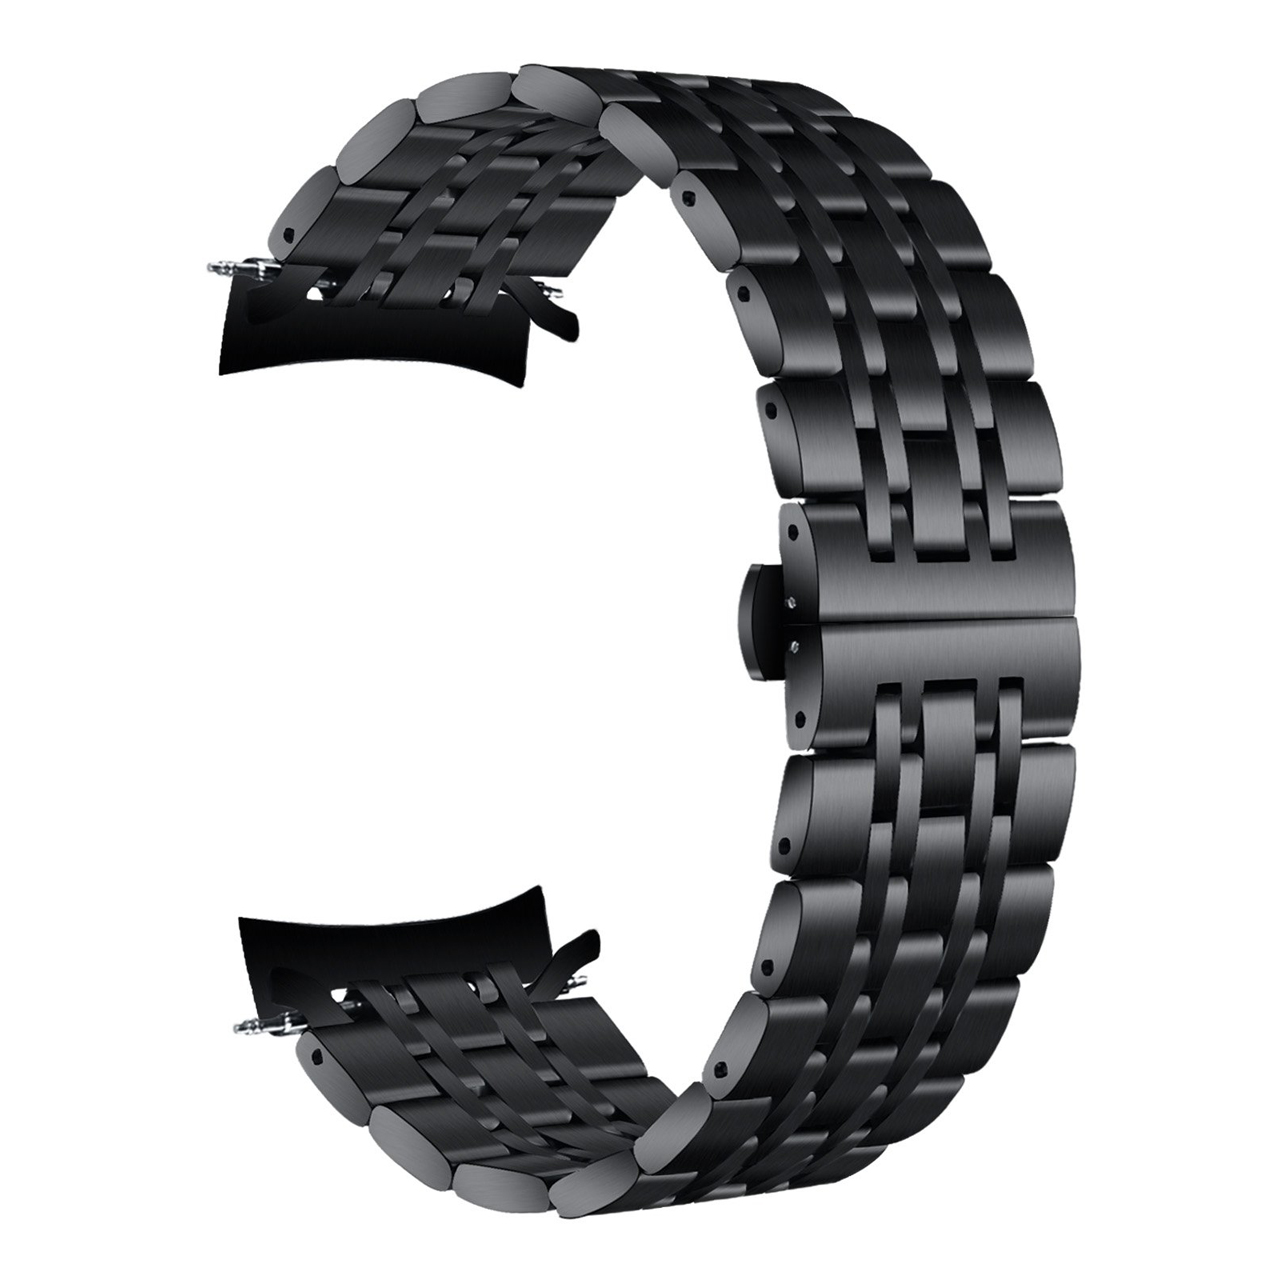 بند ساعت هوشمند مدل Bead 7 مناسب برای ساعت هوشمند سامسونگ Galaxy Watch 46mm